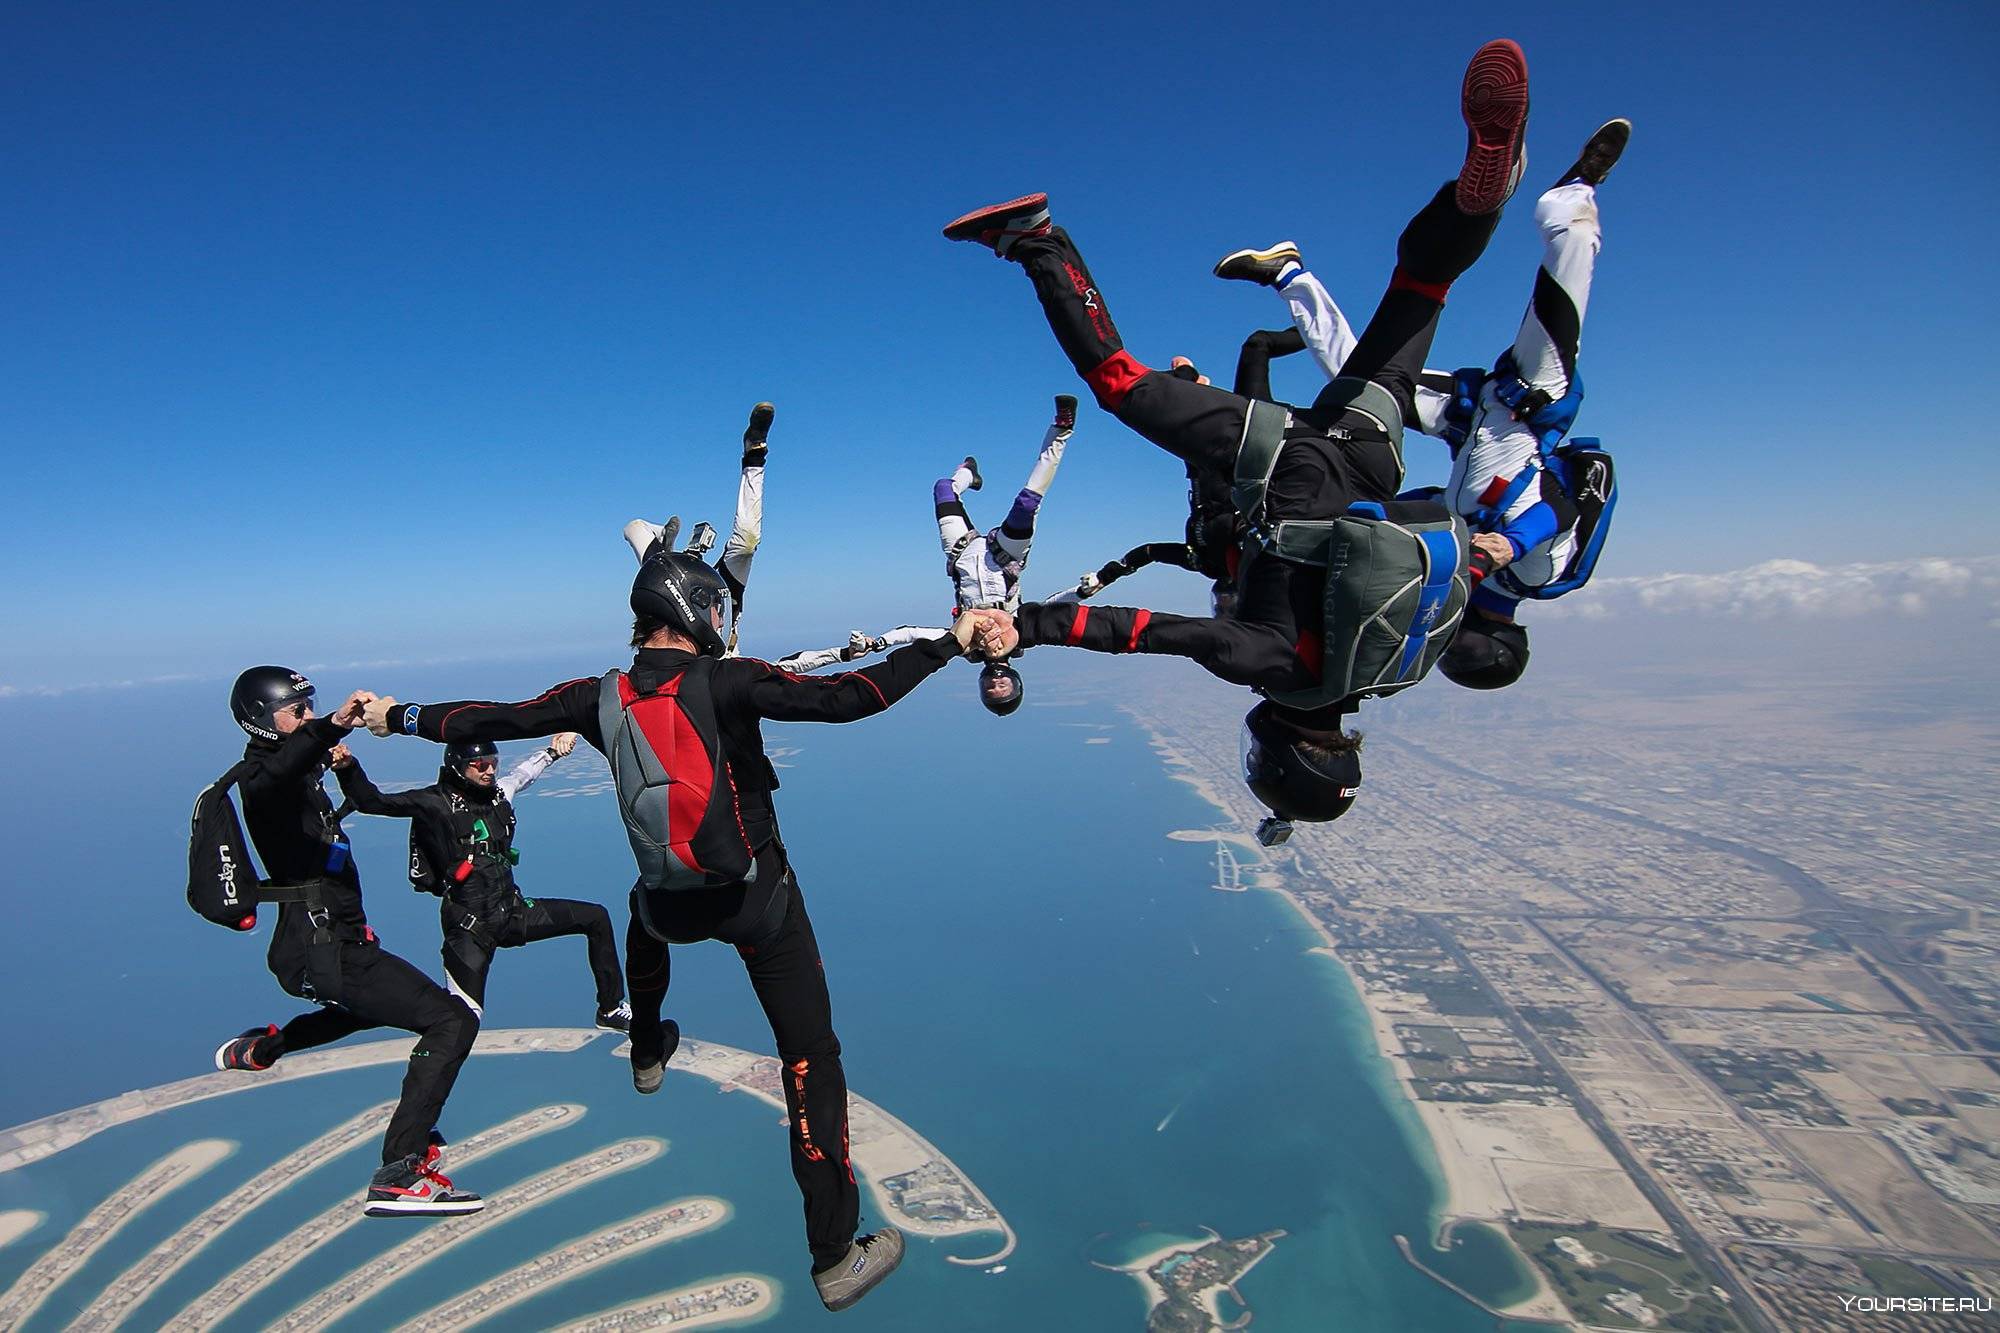 Блог yoair - открывая мозаики мира.
путеводитель: лучшие места для прыжков с парашютом в сша - yoair blog